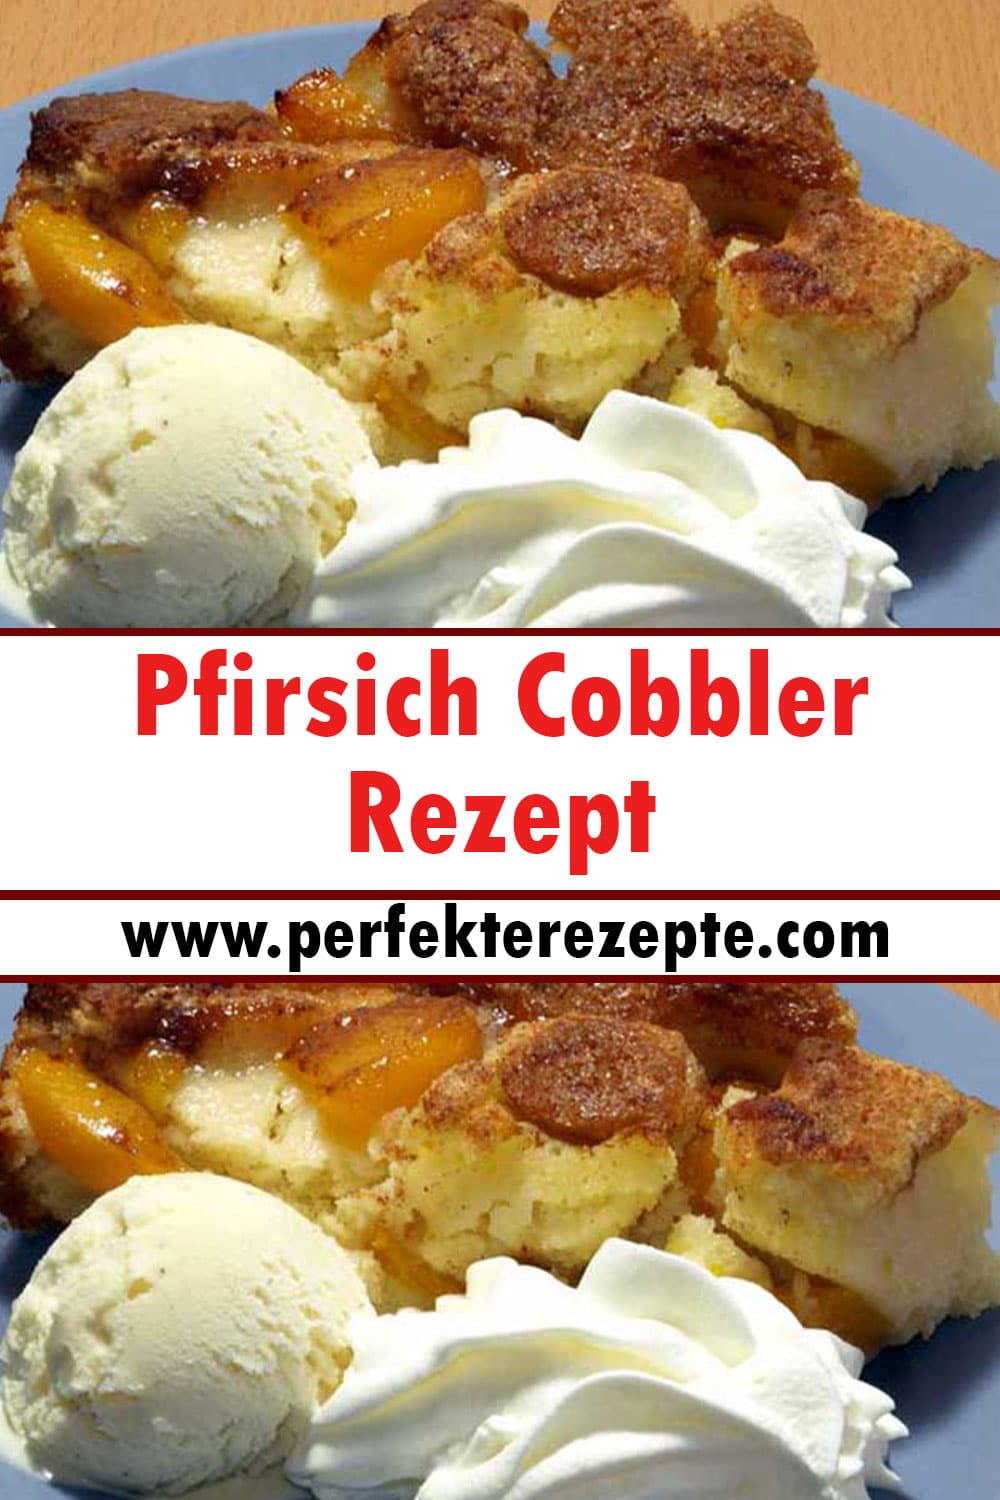 Pfirsich Cobbler Rezept